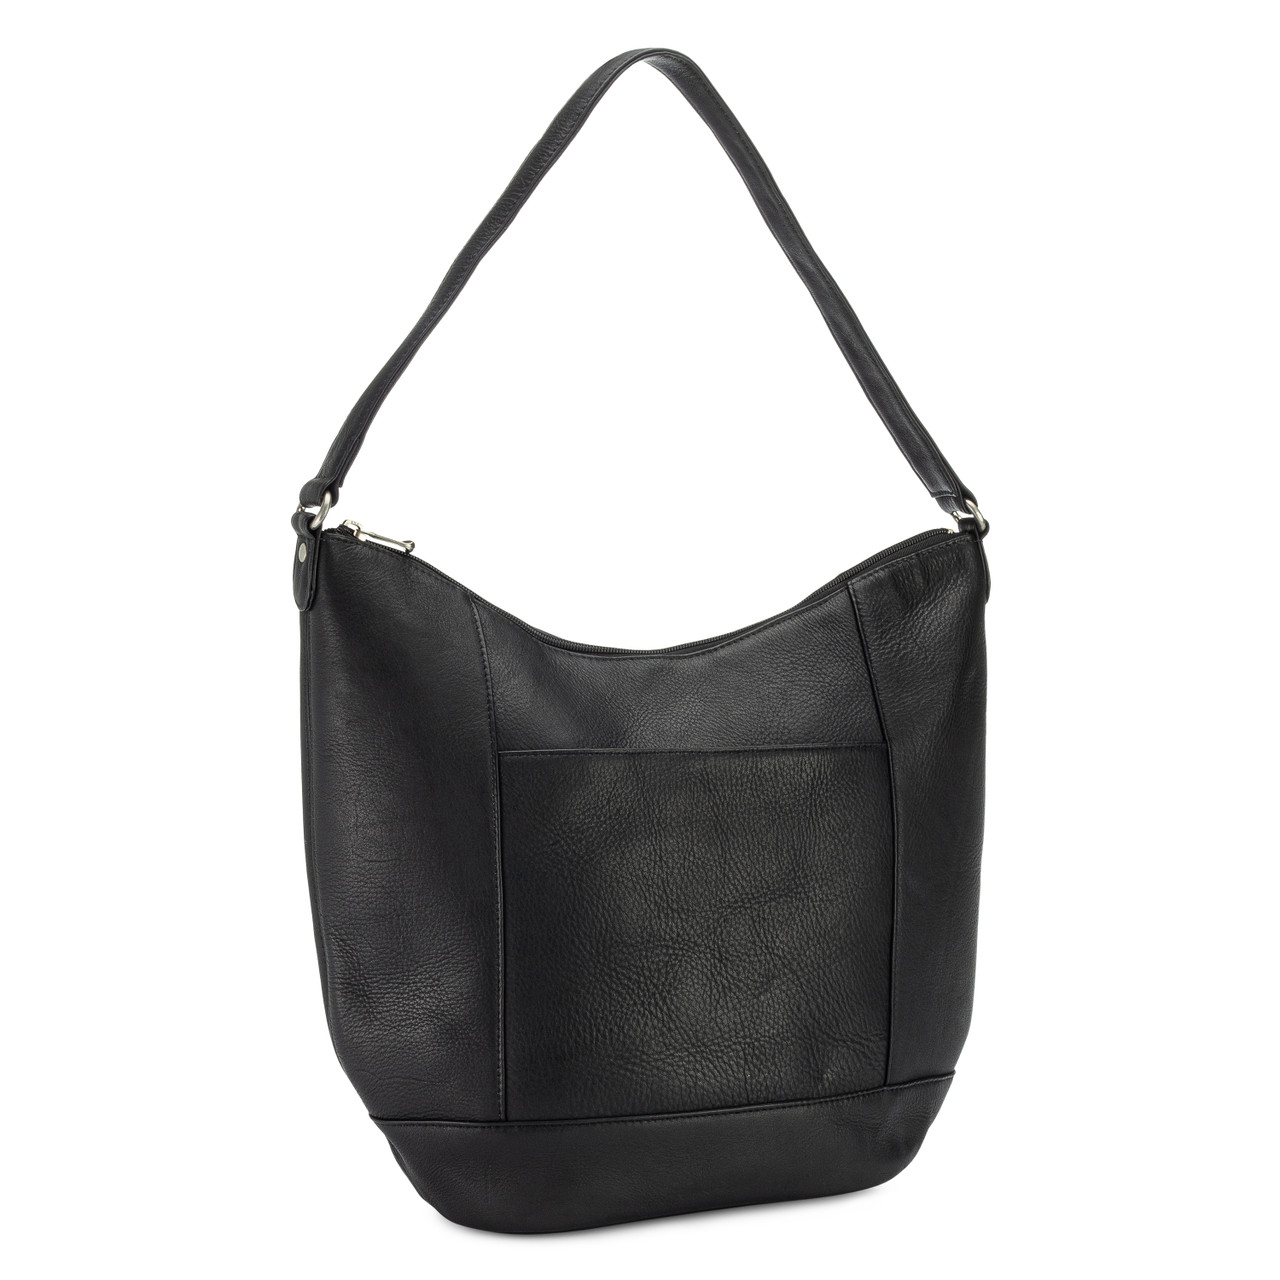 Hobo The Original shoulder bag / purse. Black leather designer medium size  | eBay